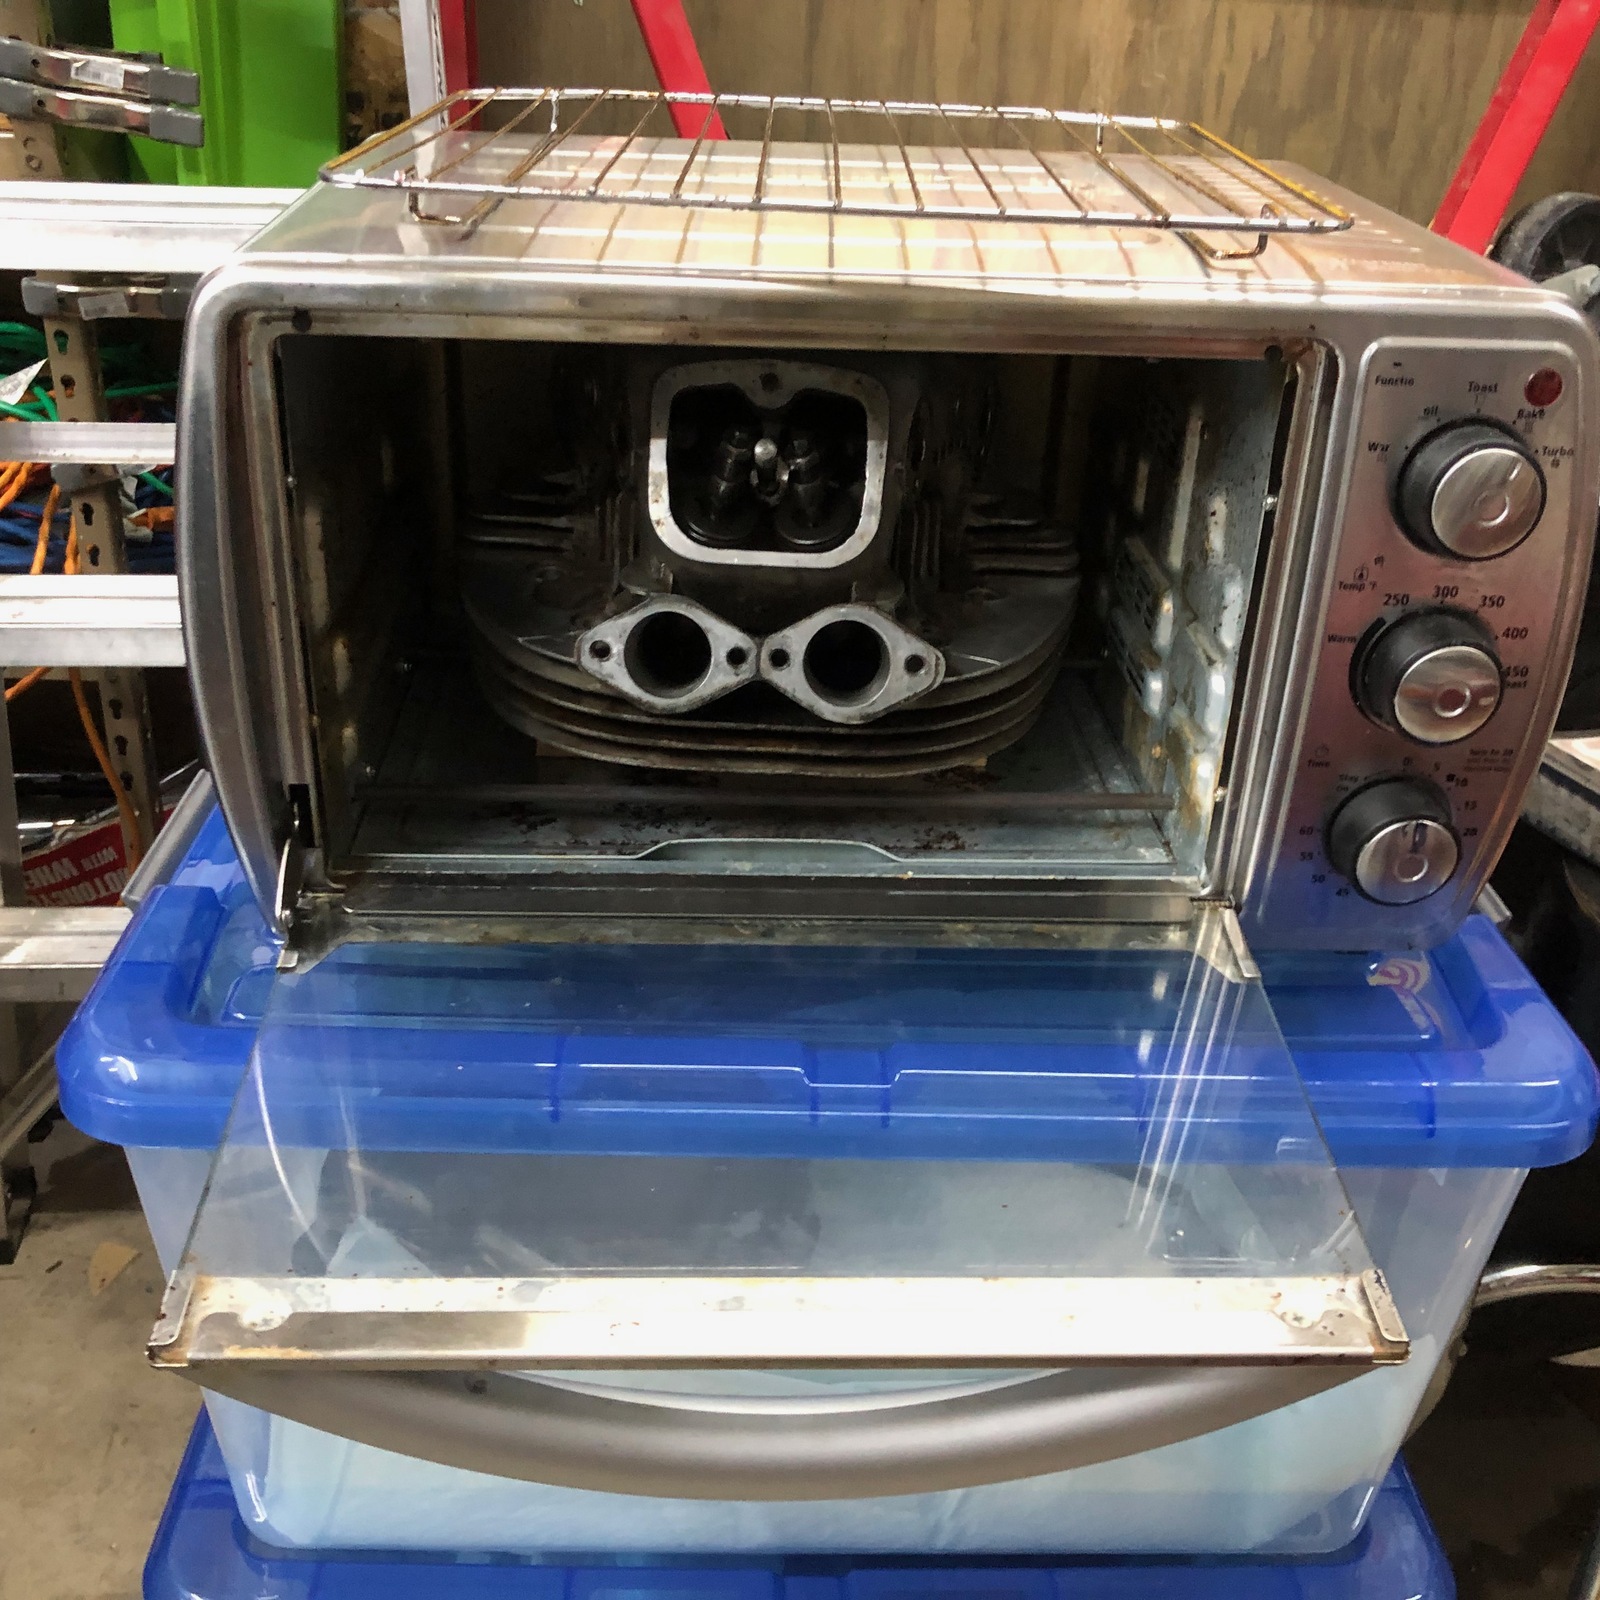 Easy-Bake Oven!